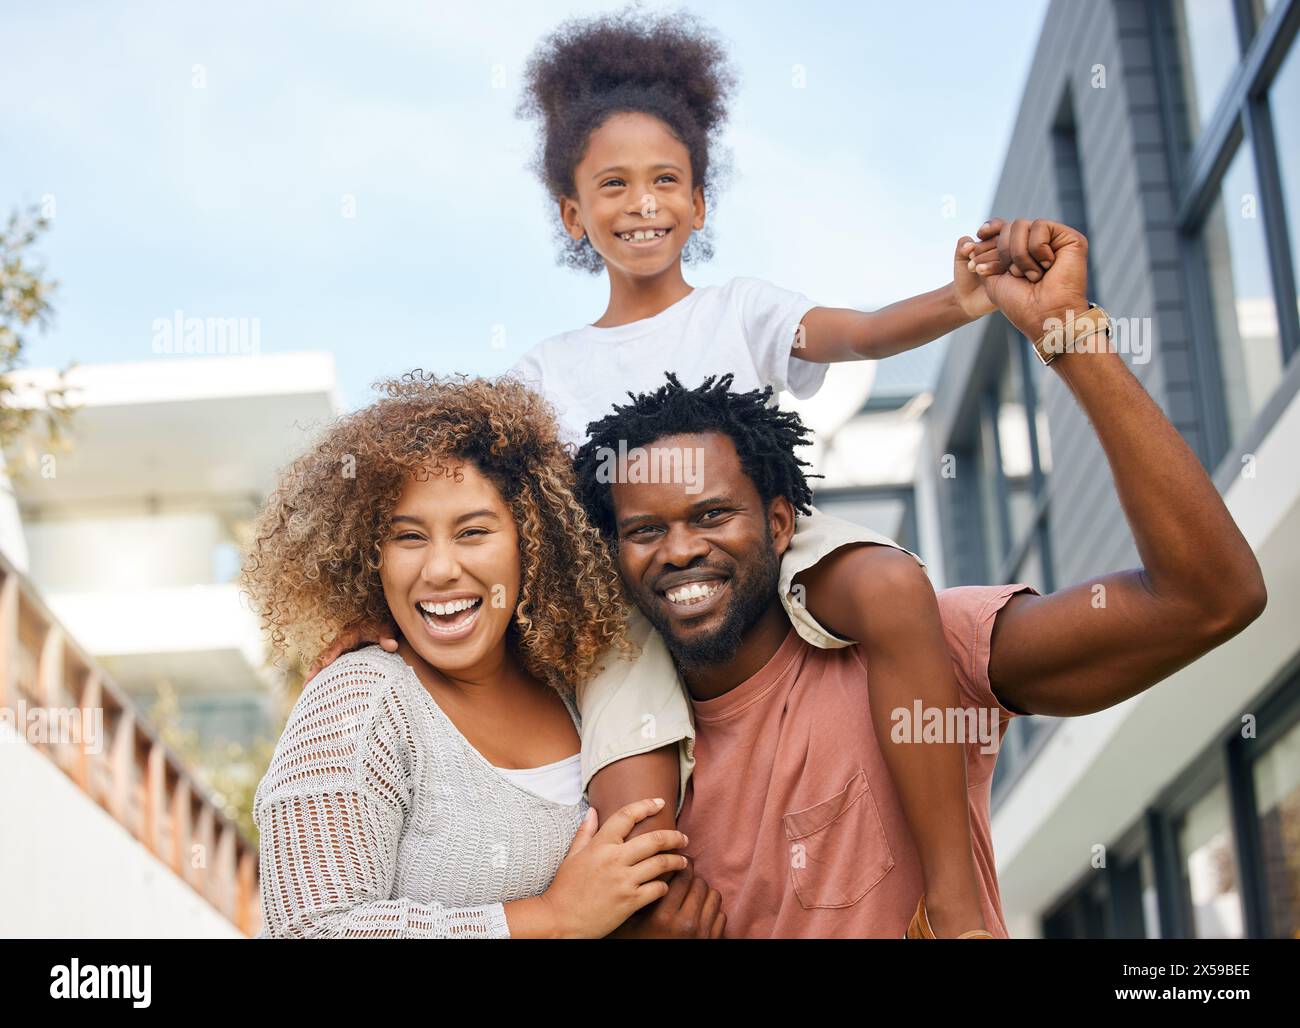 All'aperto, madre africana e padre con figlia, città e insieme con amore, sorriso ed estate. Costruire, donna e uomo con ragazza, felicità e gioia Foto Stock